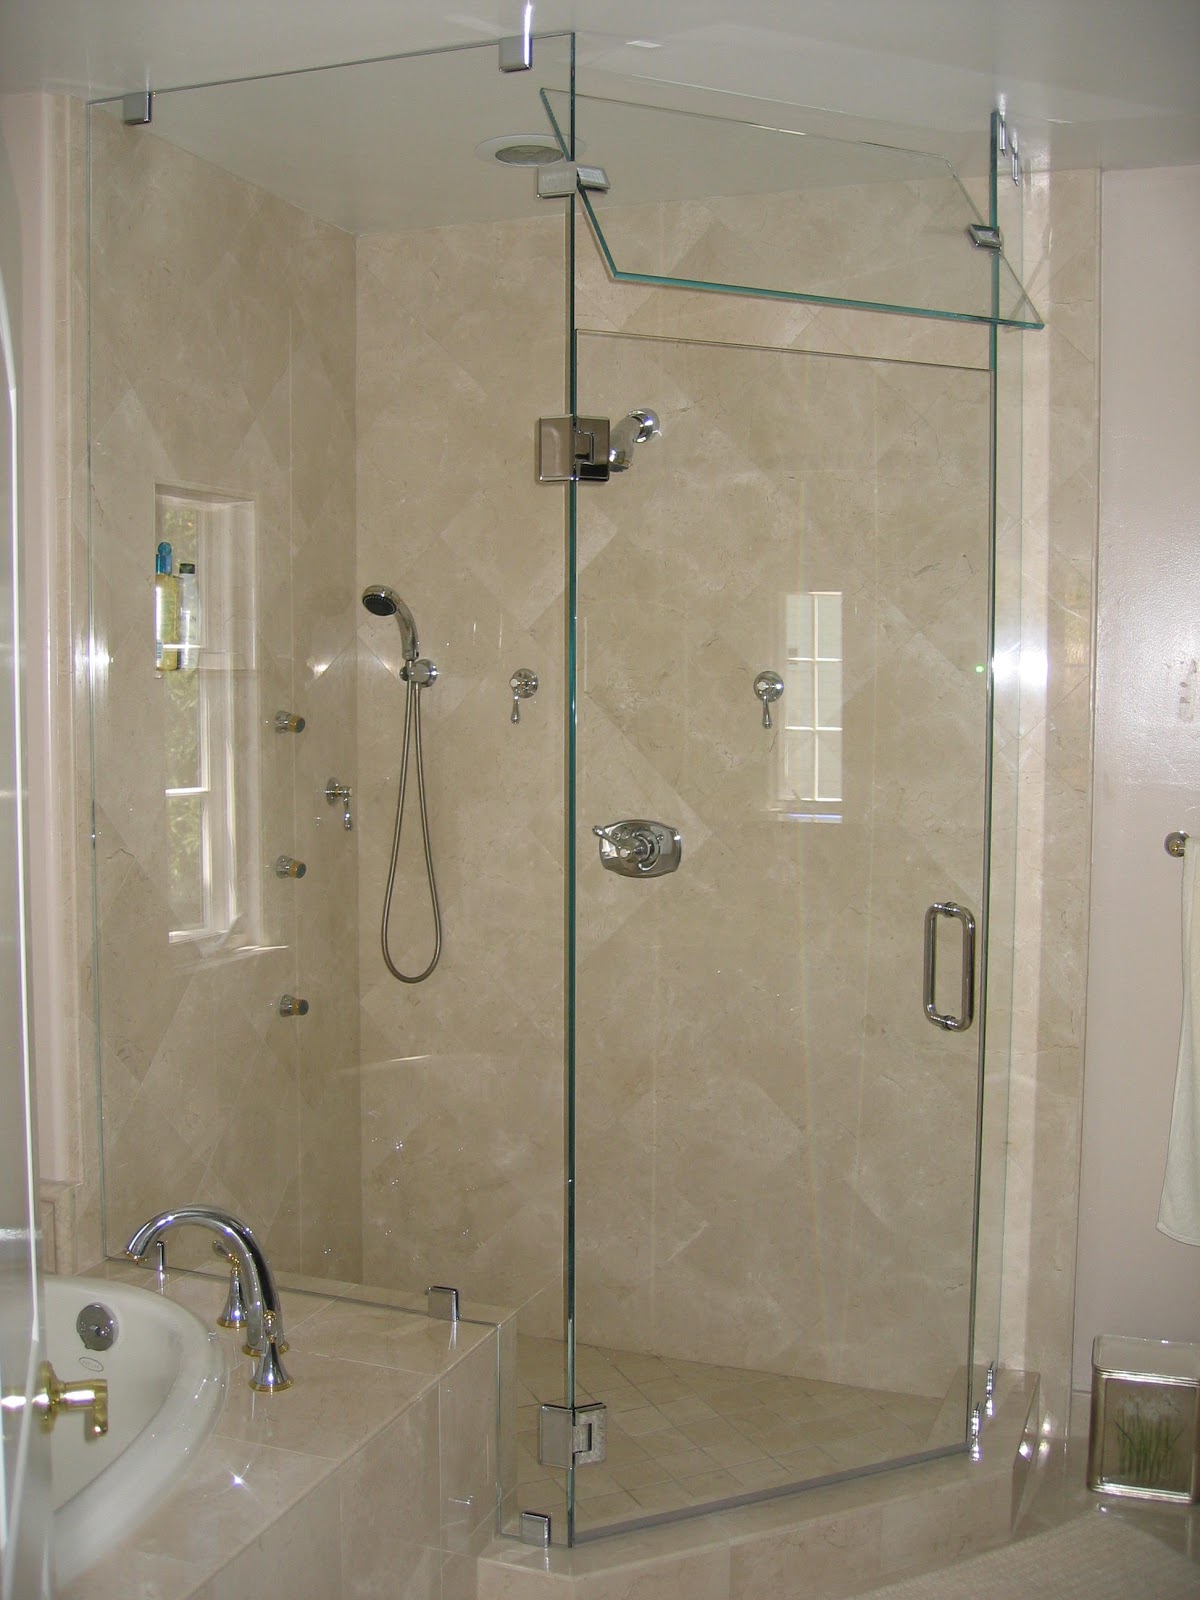 Phòng tắm kính mở quay: Phòng tắm kính mở quay giúp bạn tận hưởng không gian phòng tắm toàn diện và thoải mái hơn. Thiết kế đẹp, chất liệu cao cấp cùng với tính năng tiện lợi sẽ đáp ứng tốt nhất nhu cầu của bạn và gia đình.